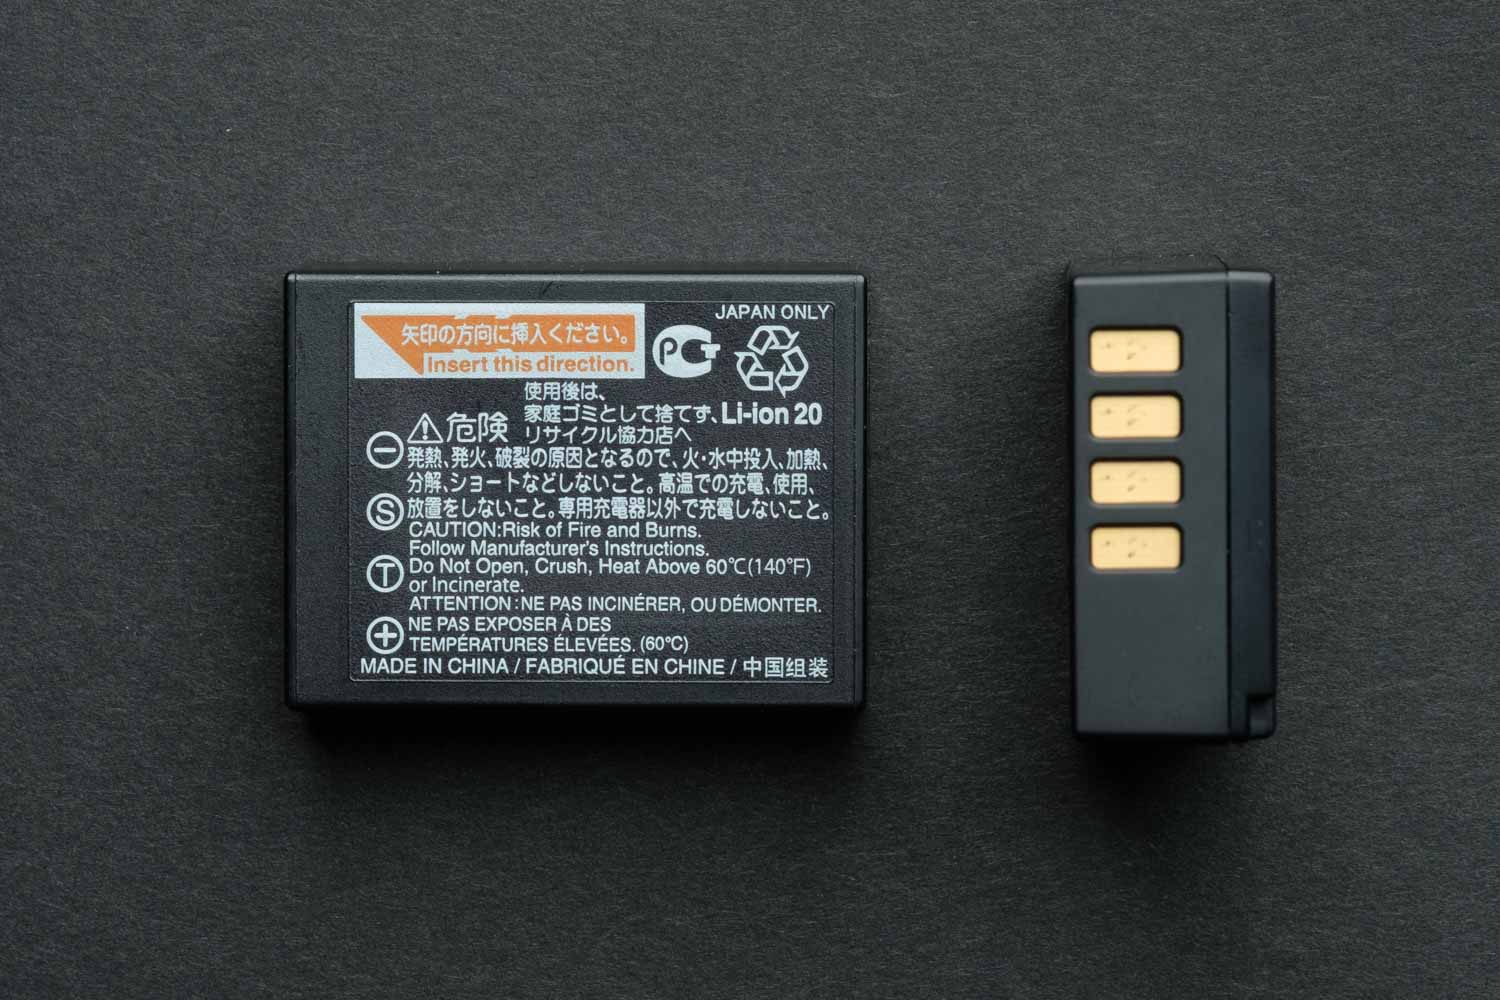 Fuji XT3 Battery